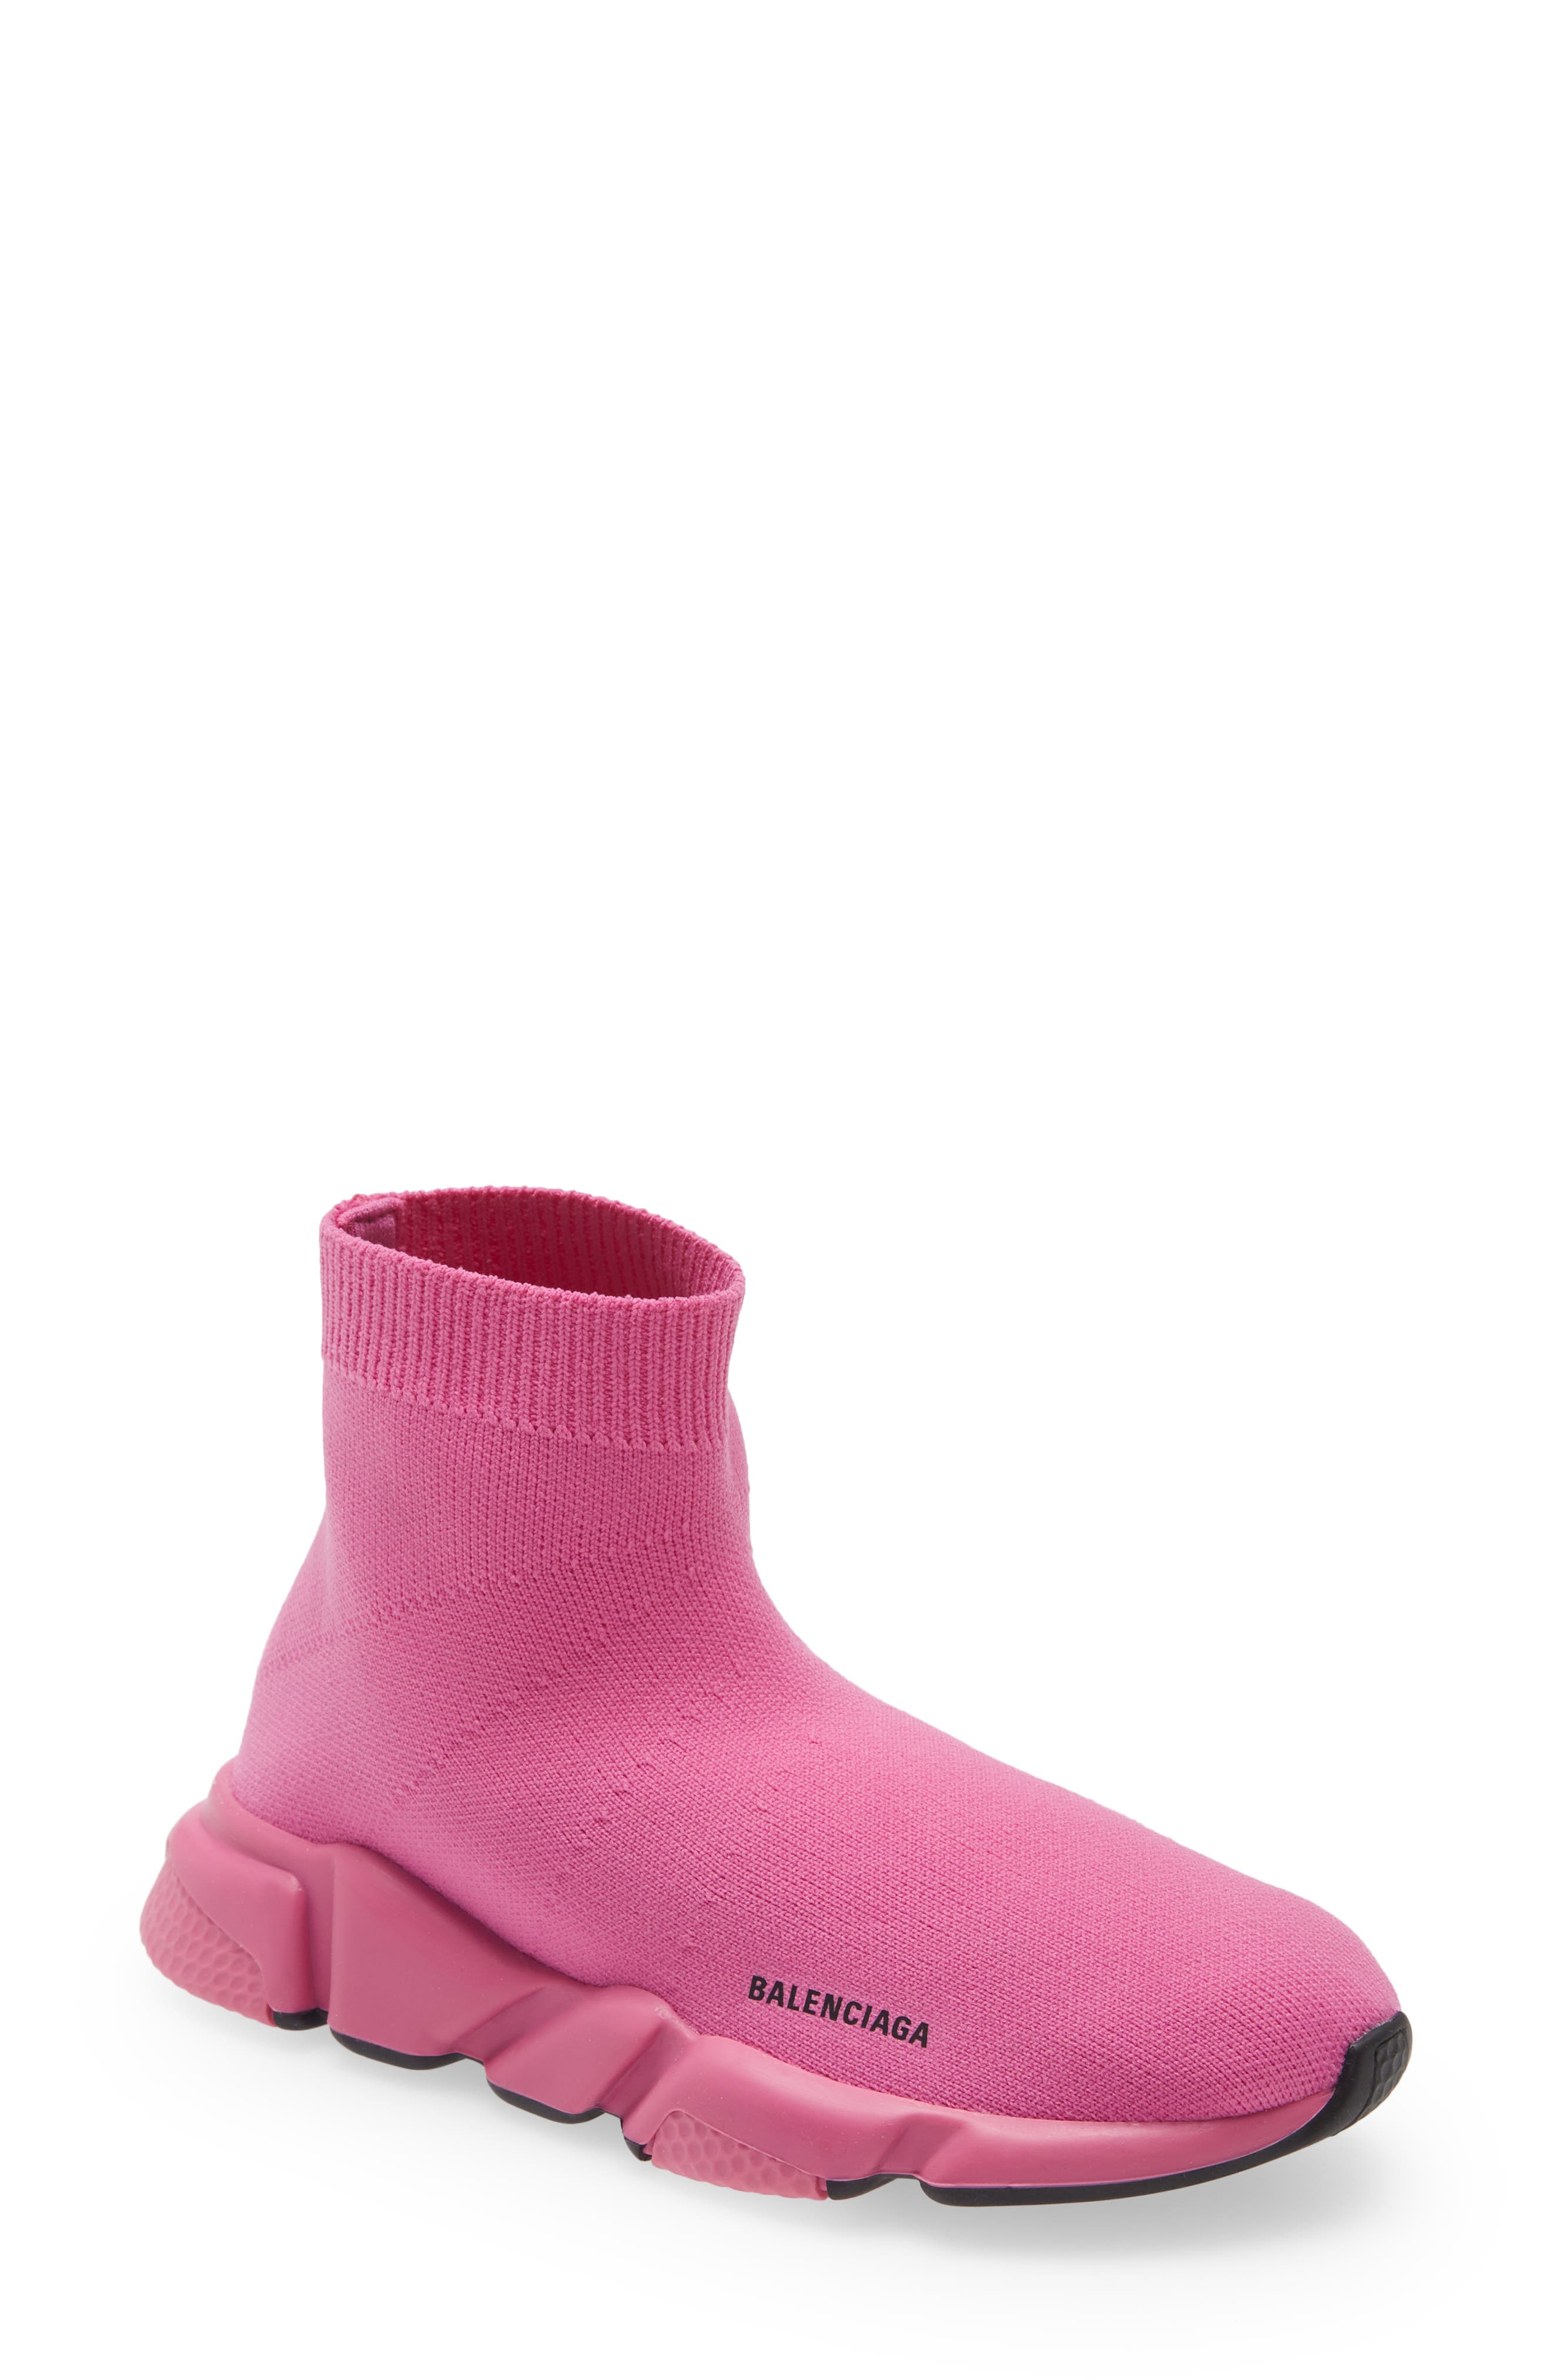 balenciaga slippers pink